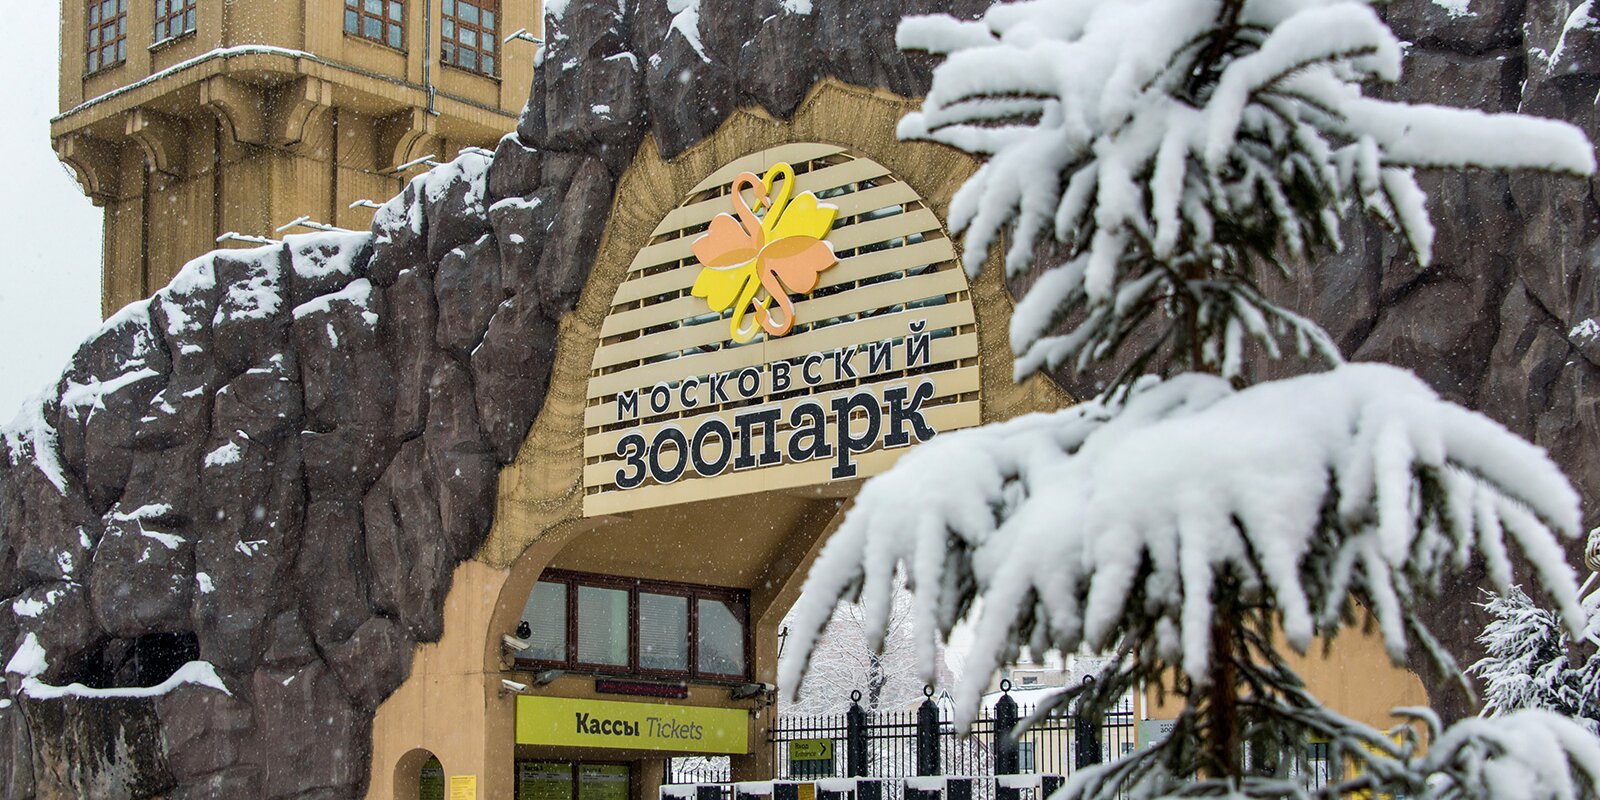 В Московском зоопарке открылся новый вход